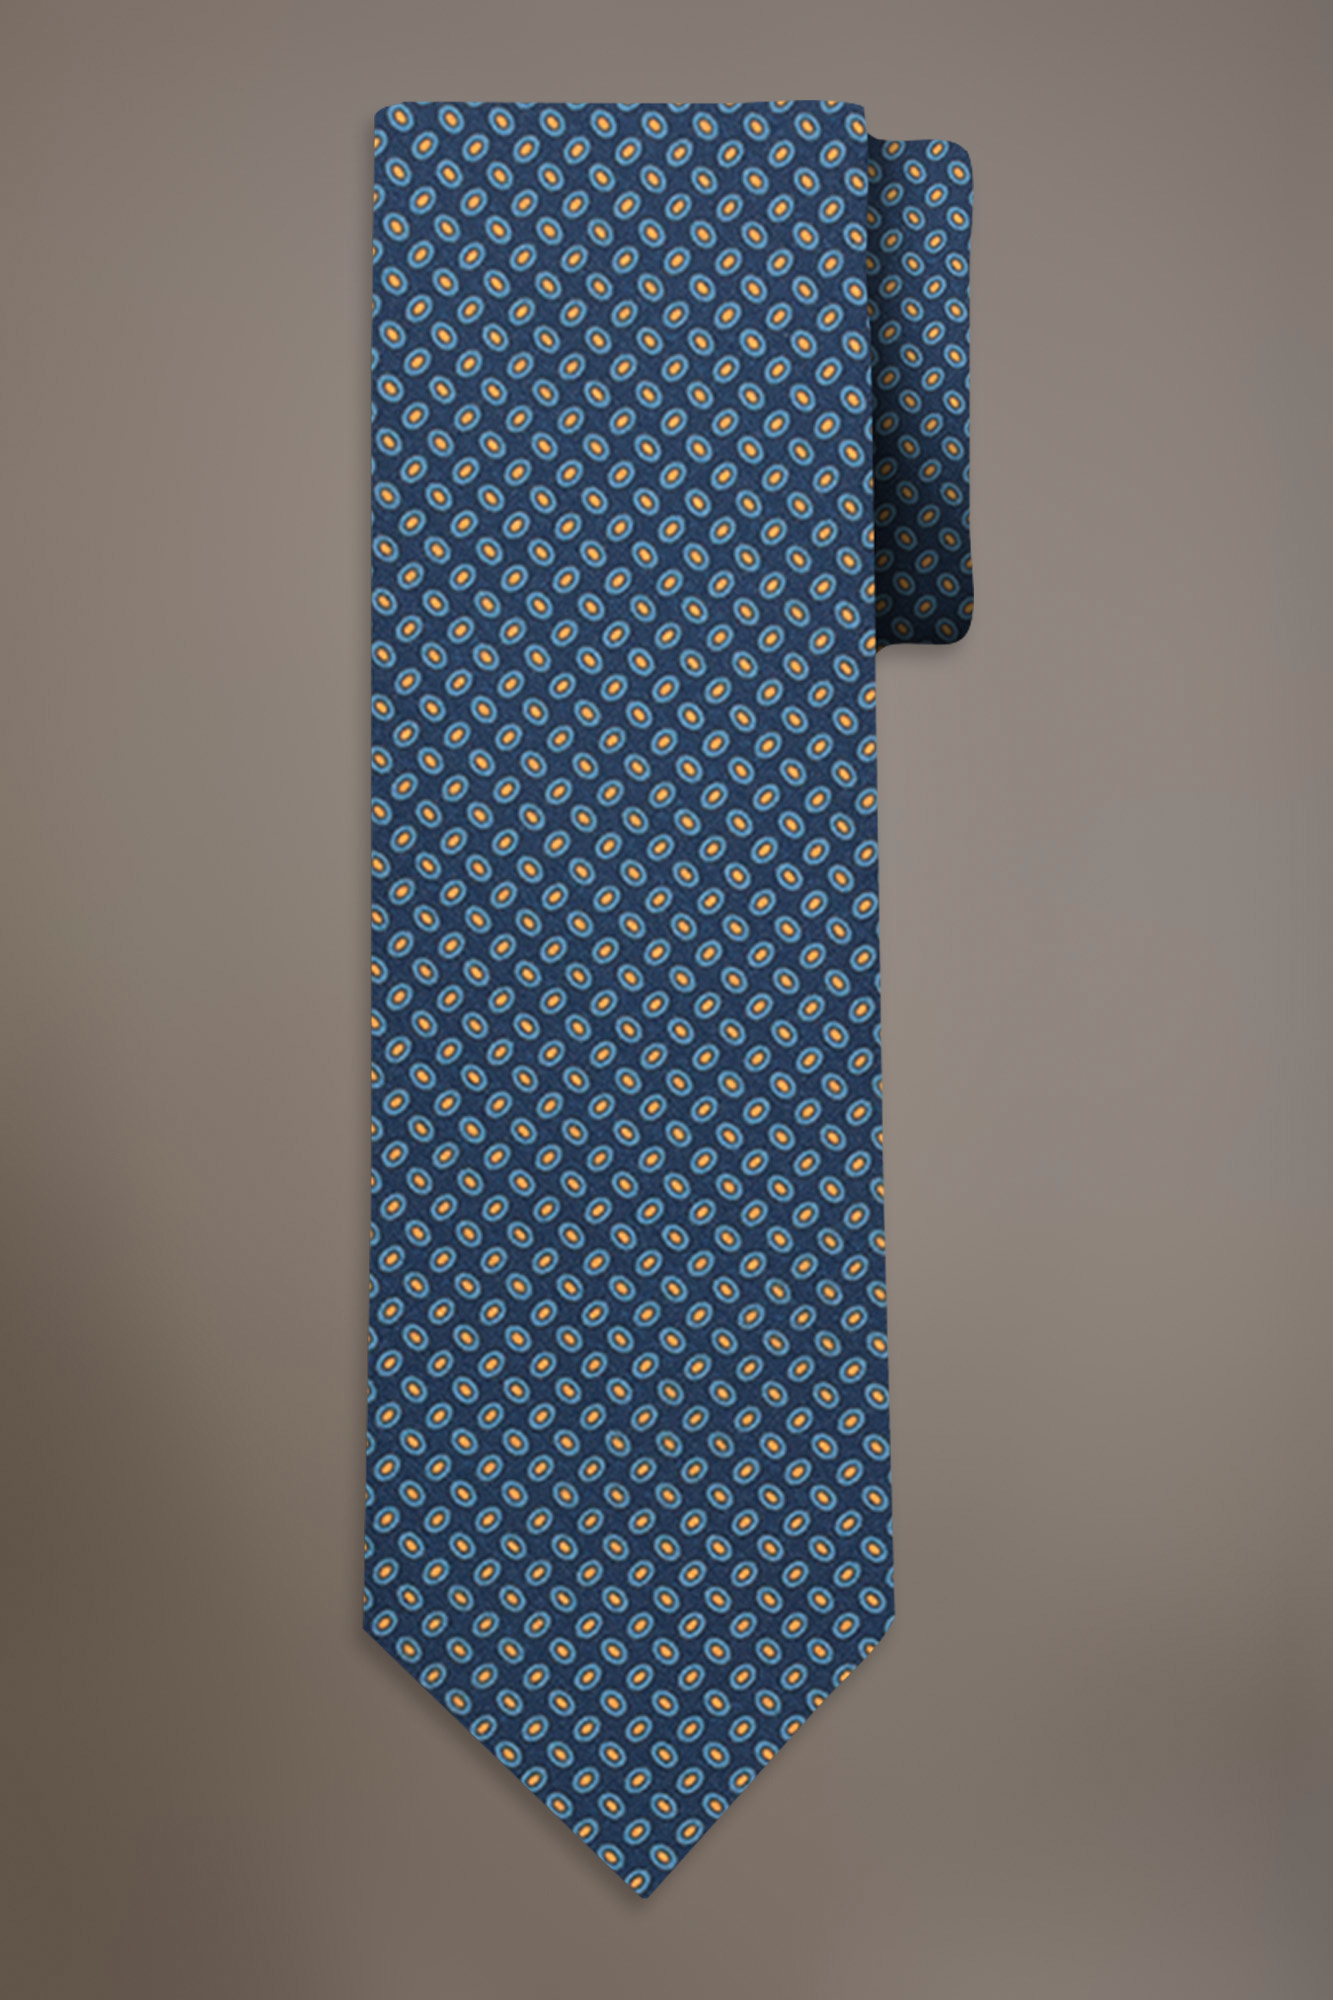 Printed fancy tie